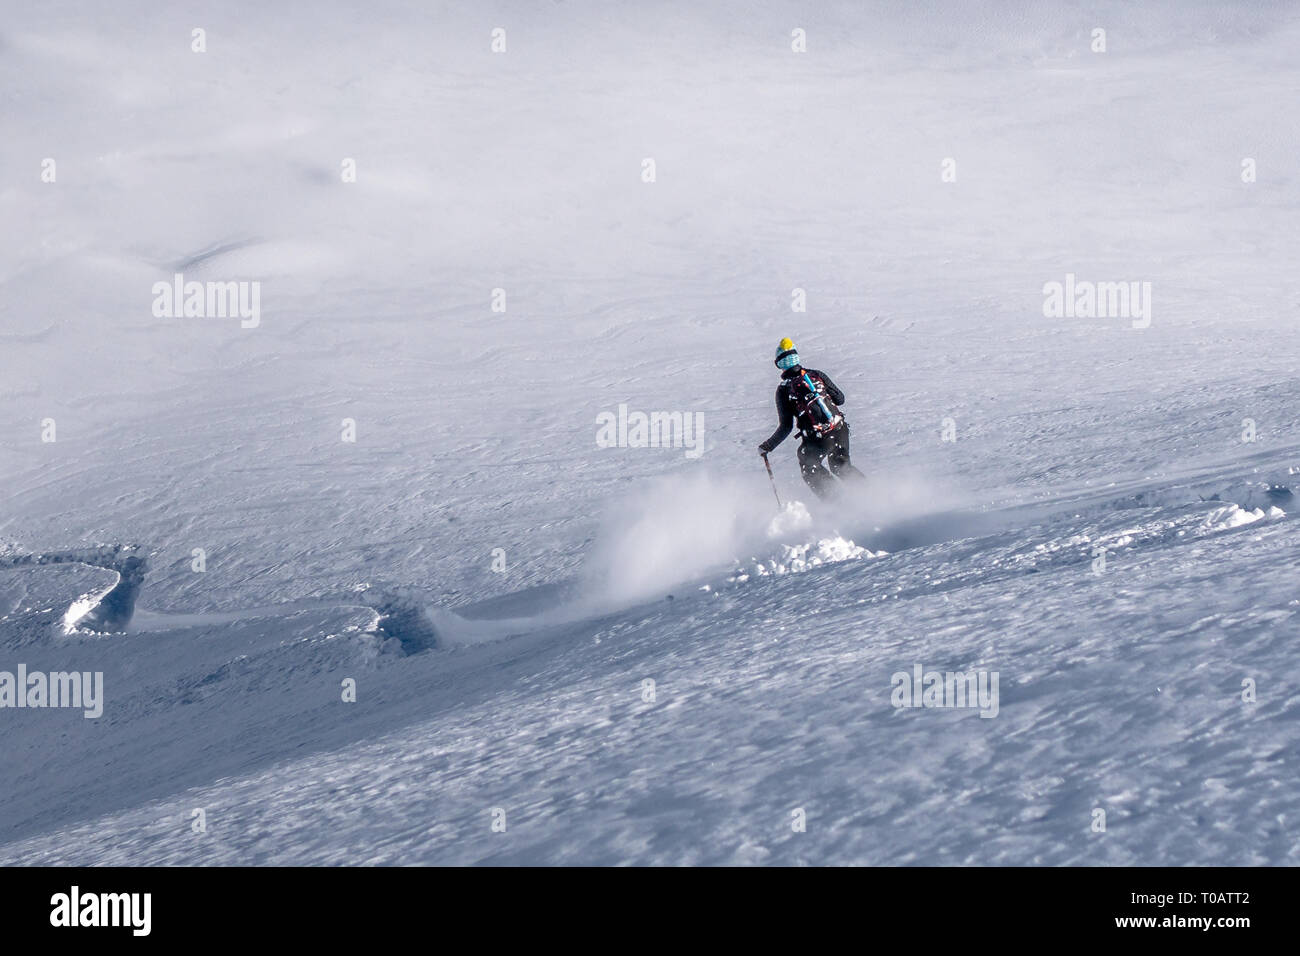 Chamonix, France - 5 Février 2019 : Un skieur freeride femme descendre une pente avec poudreuse fraîche dans le Vallon de Bérard dans les Aiguilles Rouges Banque D'Images